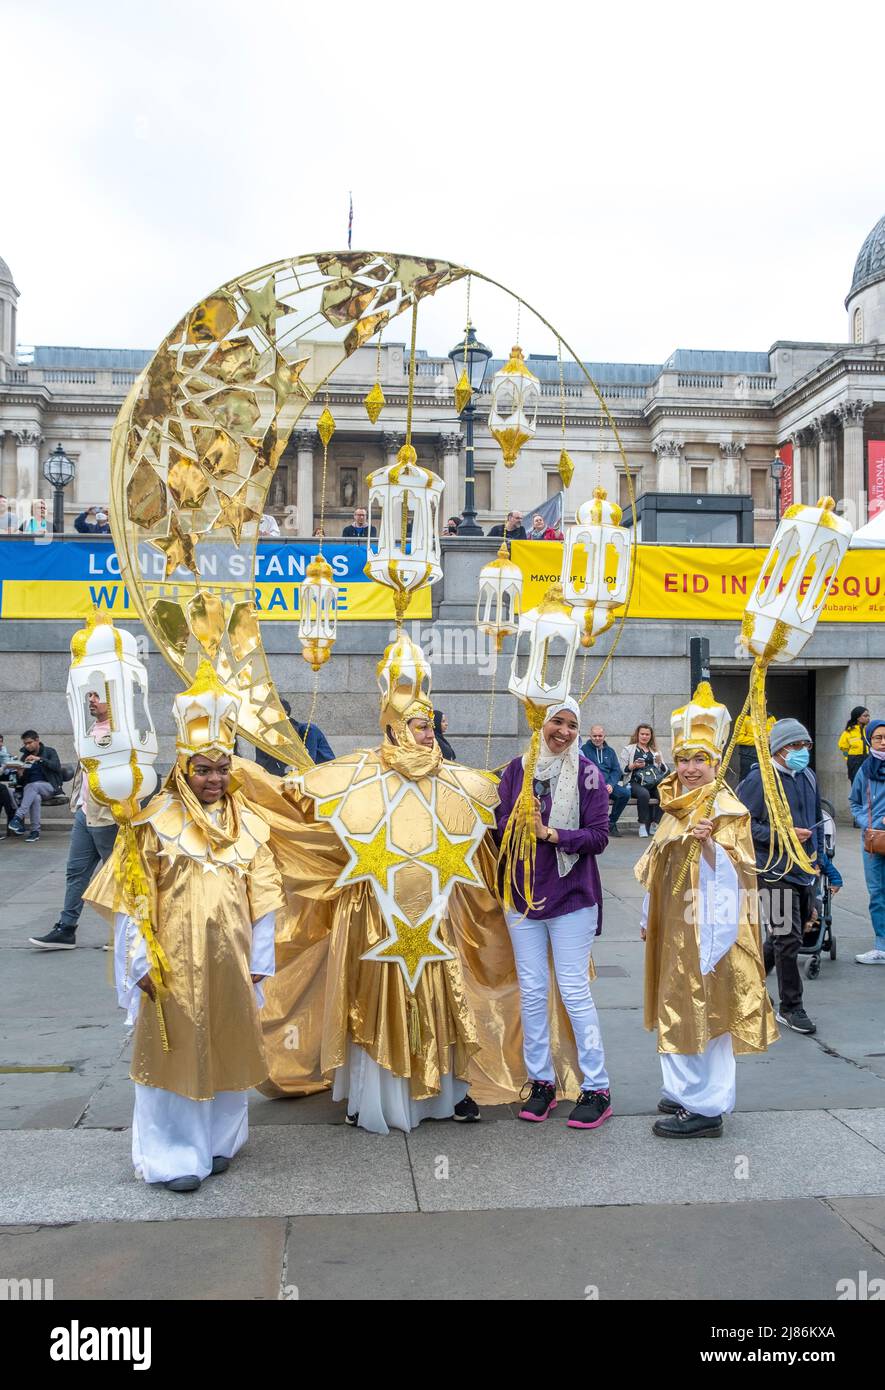 Londres célèbre Eid in the Square à Trafalgar Square. L'événement culturel unique qui marque la fin du Ramadan, le mois Saint islamique du jeûne. Banque D'Images